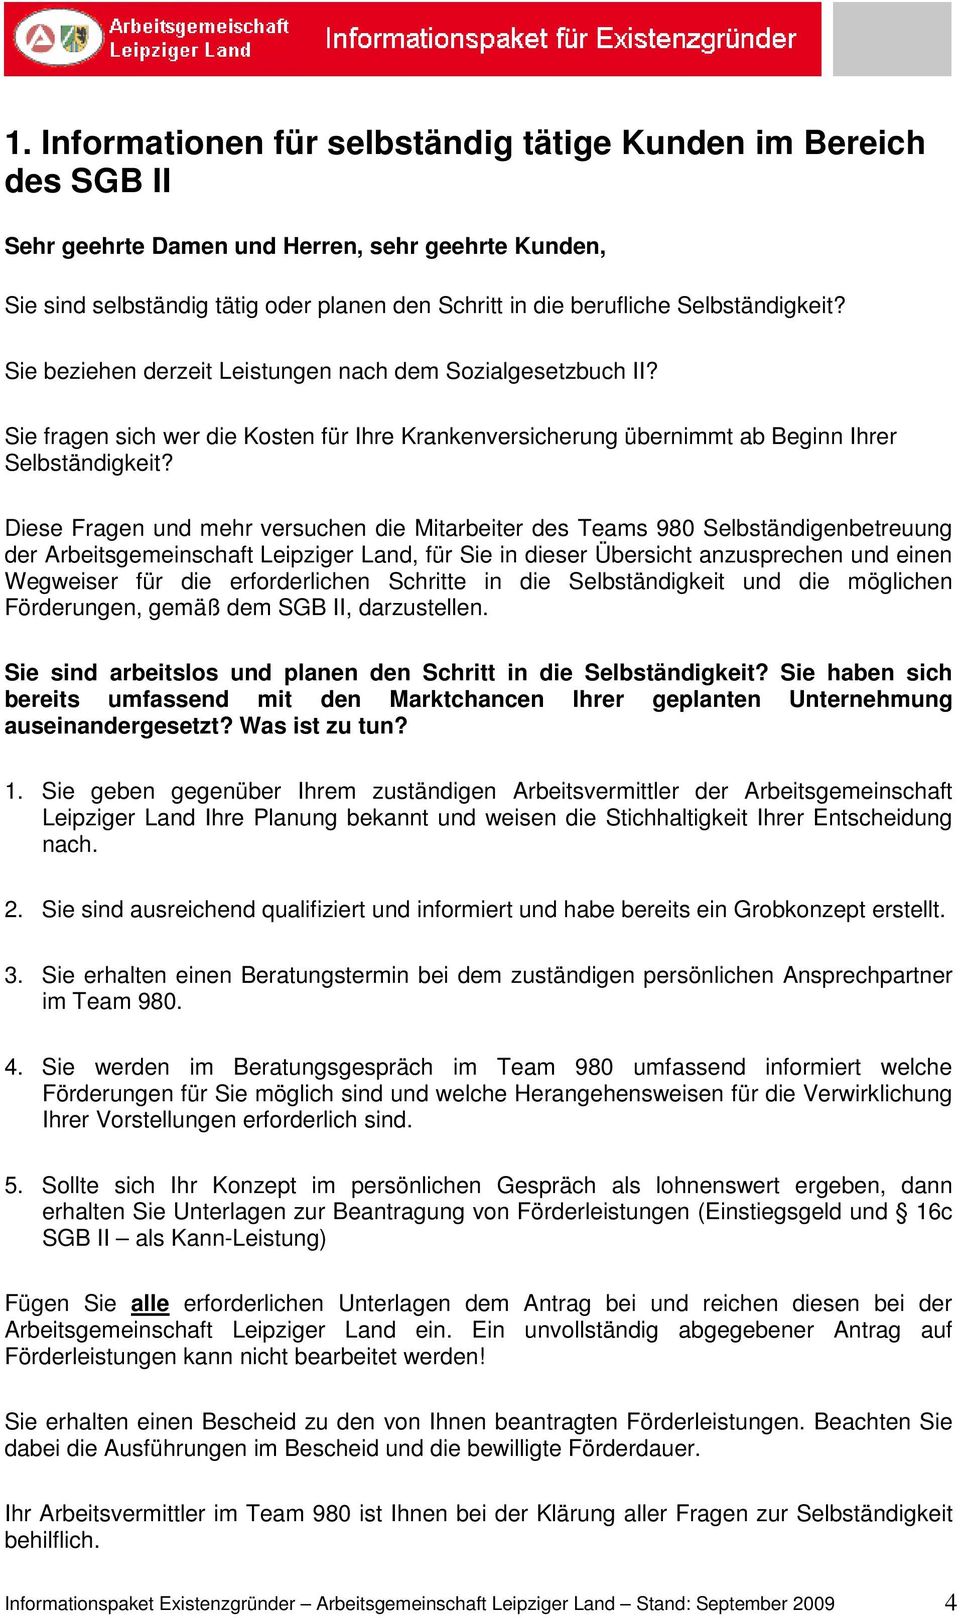 Diese Fragen und mehr versuchen die Mitarbeiter des Teams 980 Selbständigenbetreuung der Arbeitsgemeinschaft Leipziger Land, für Sie in dieser Übersicht anzusprechen und einen Wegweiser für die